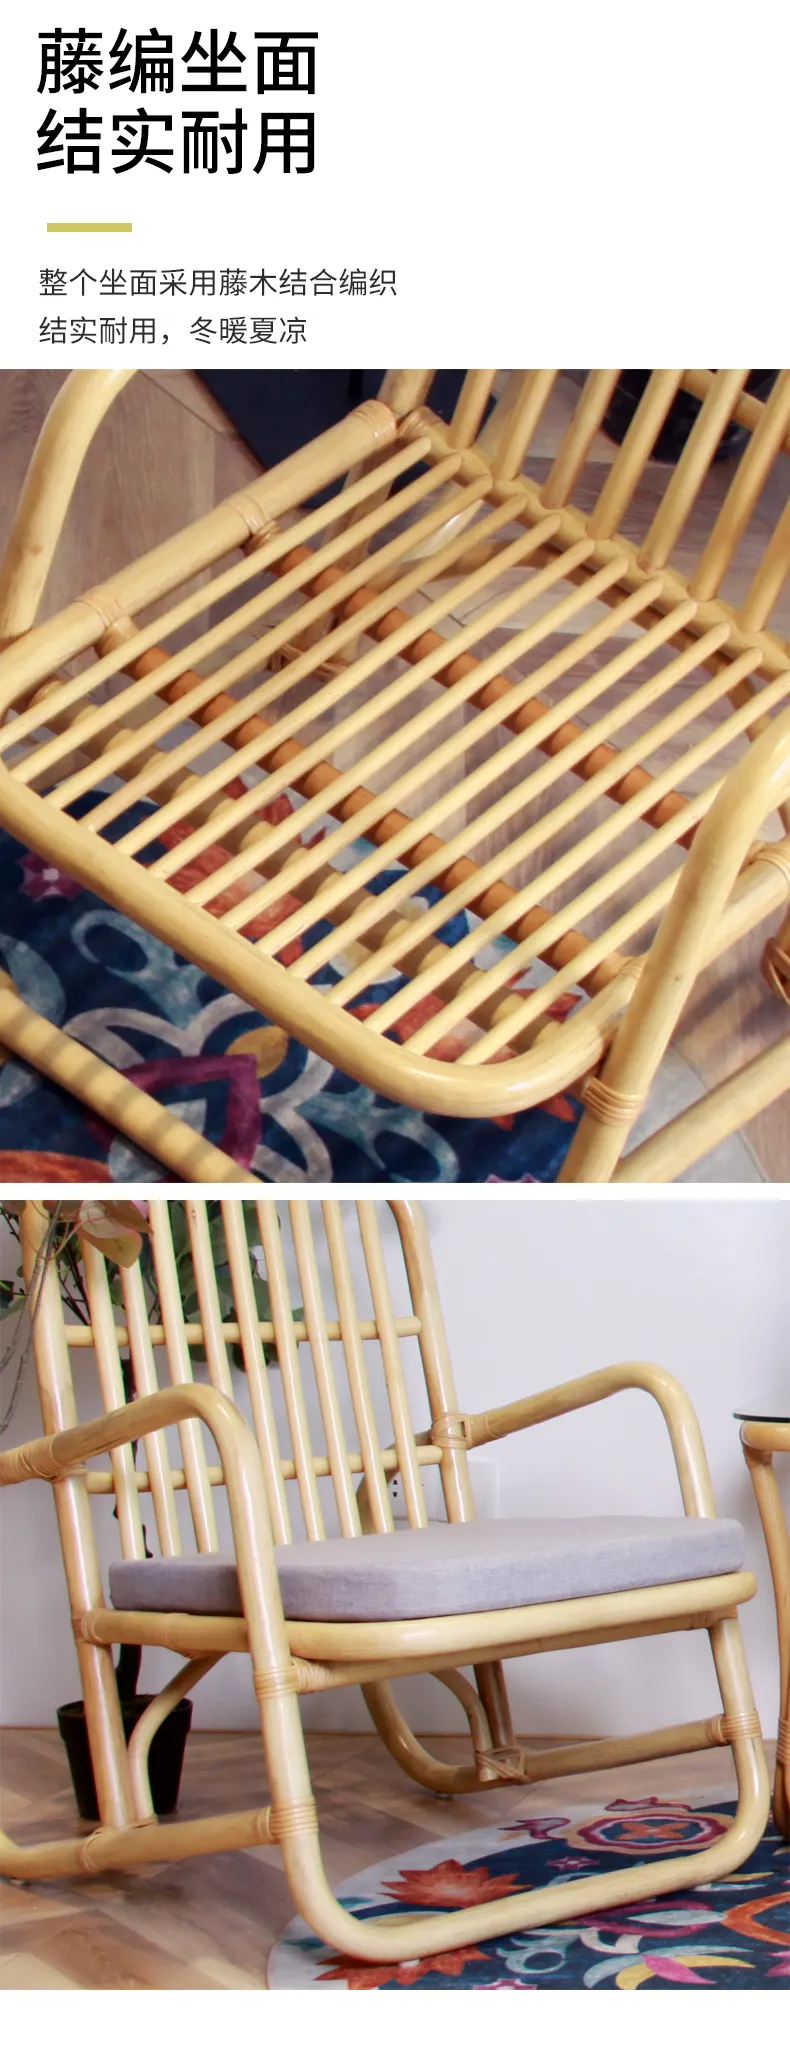 华松居 阳台藤椅系列印尼进口玛瑙藤 纯手工编织藤椅家具#罗马椅(图6)